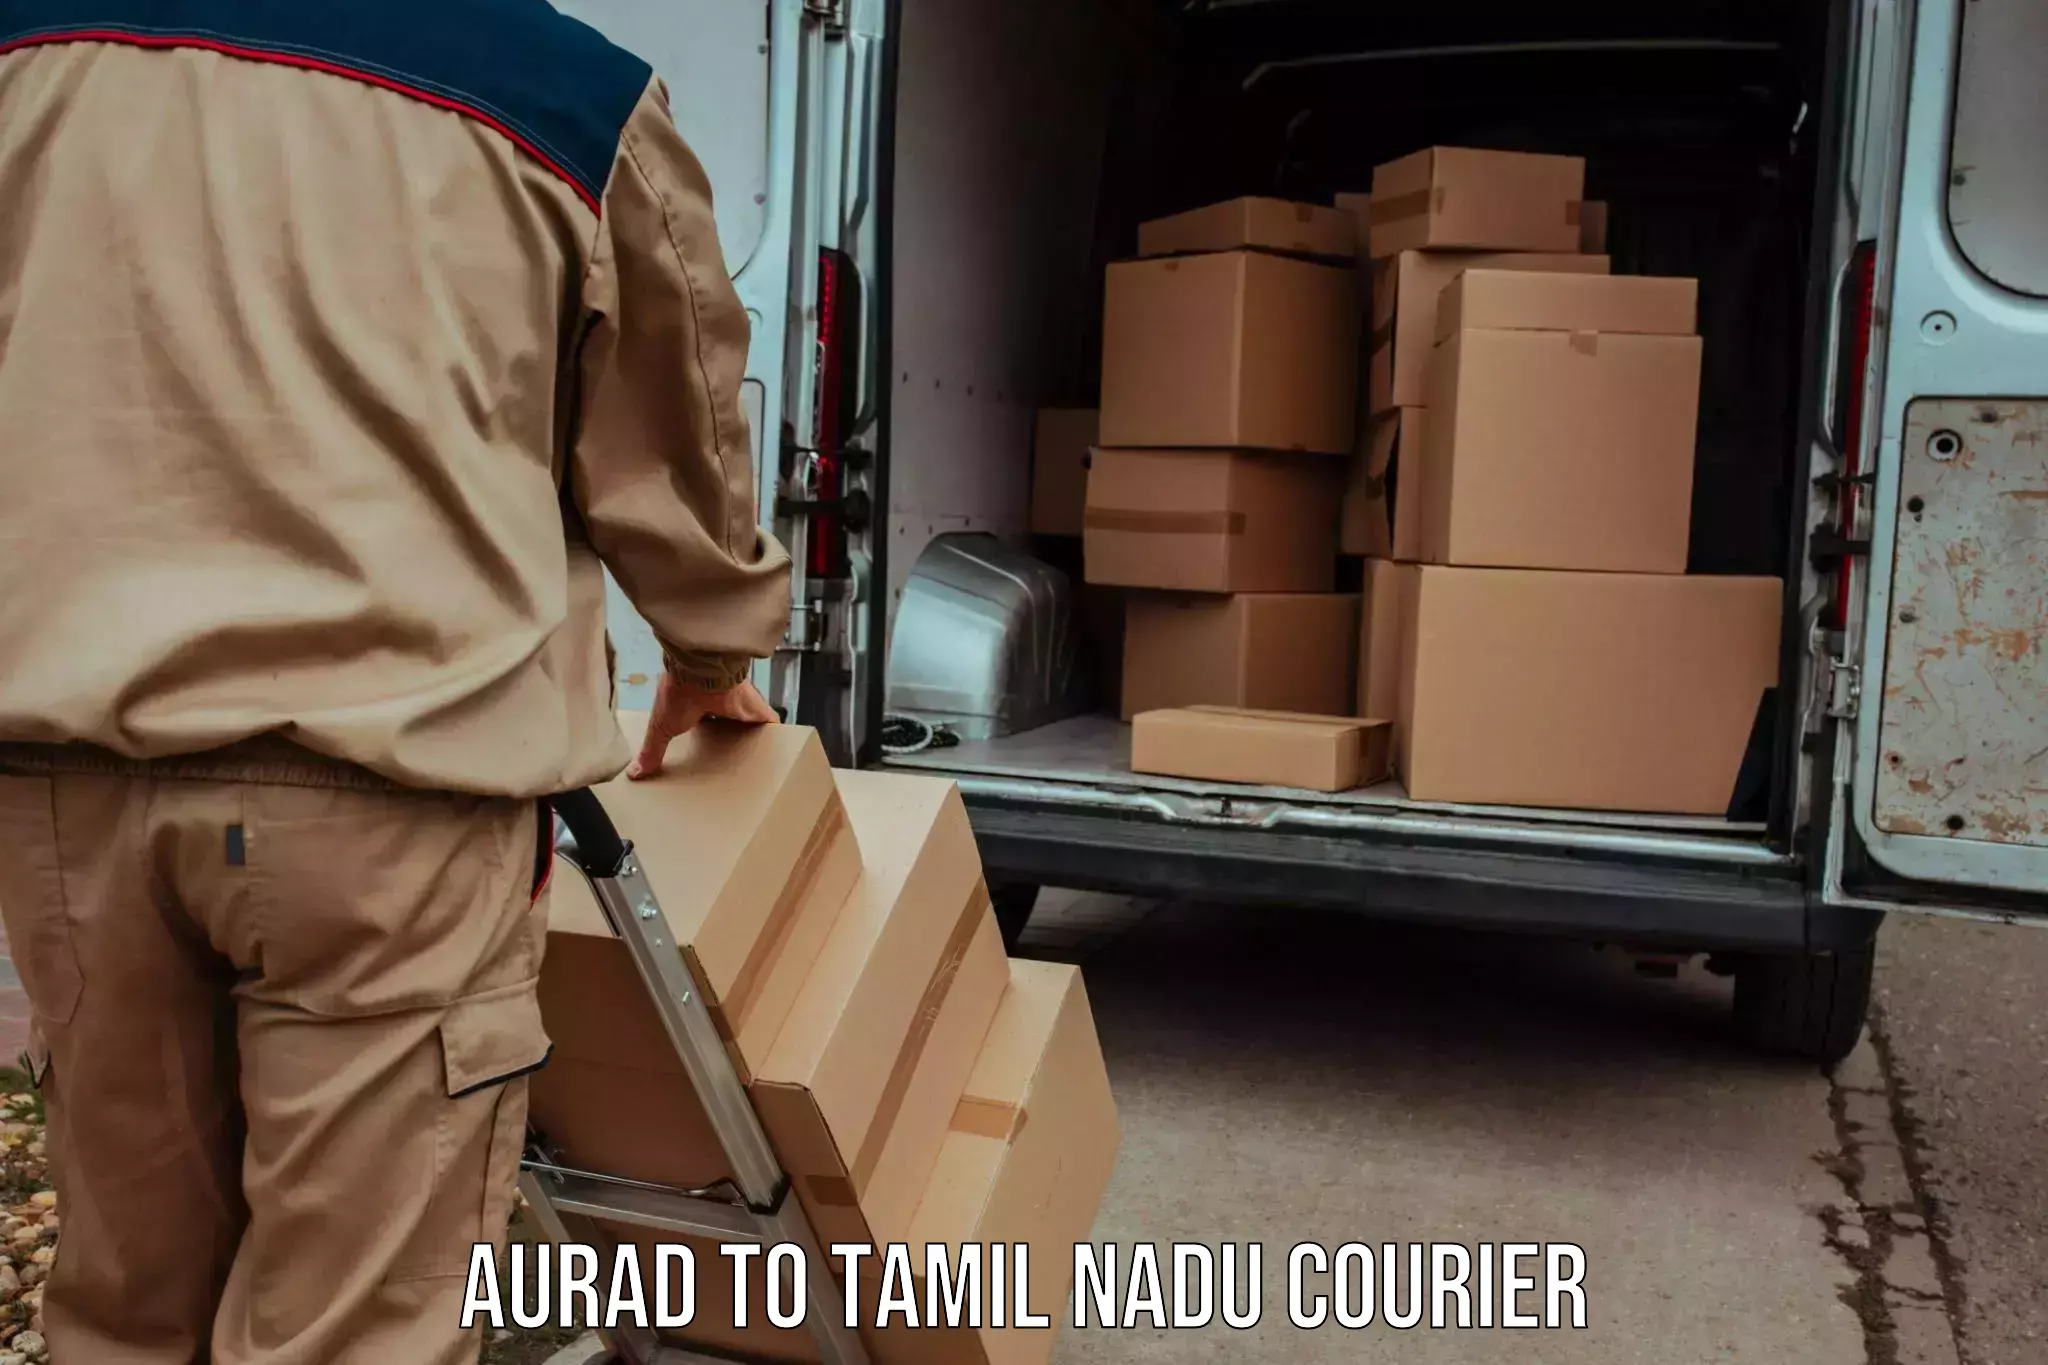 Professional courier handling Aurad to Palladam